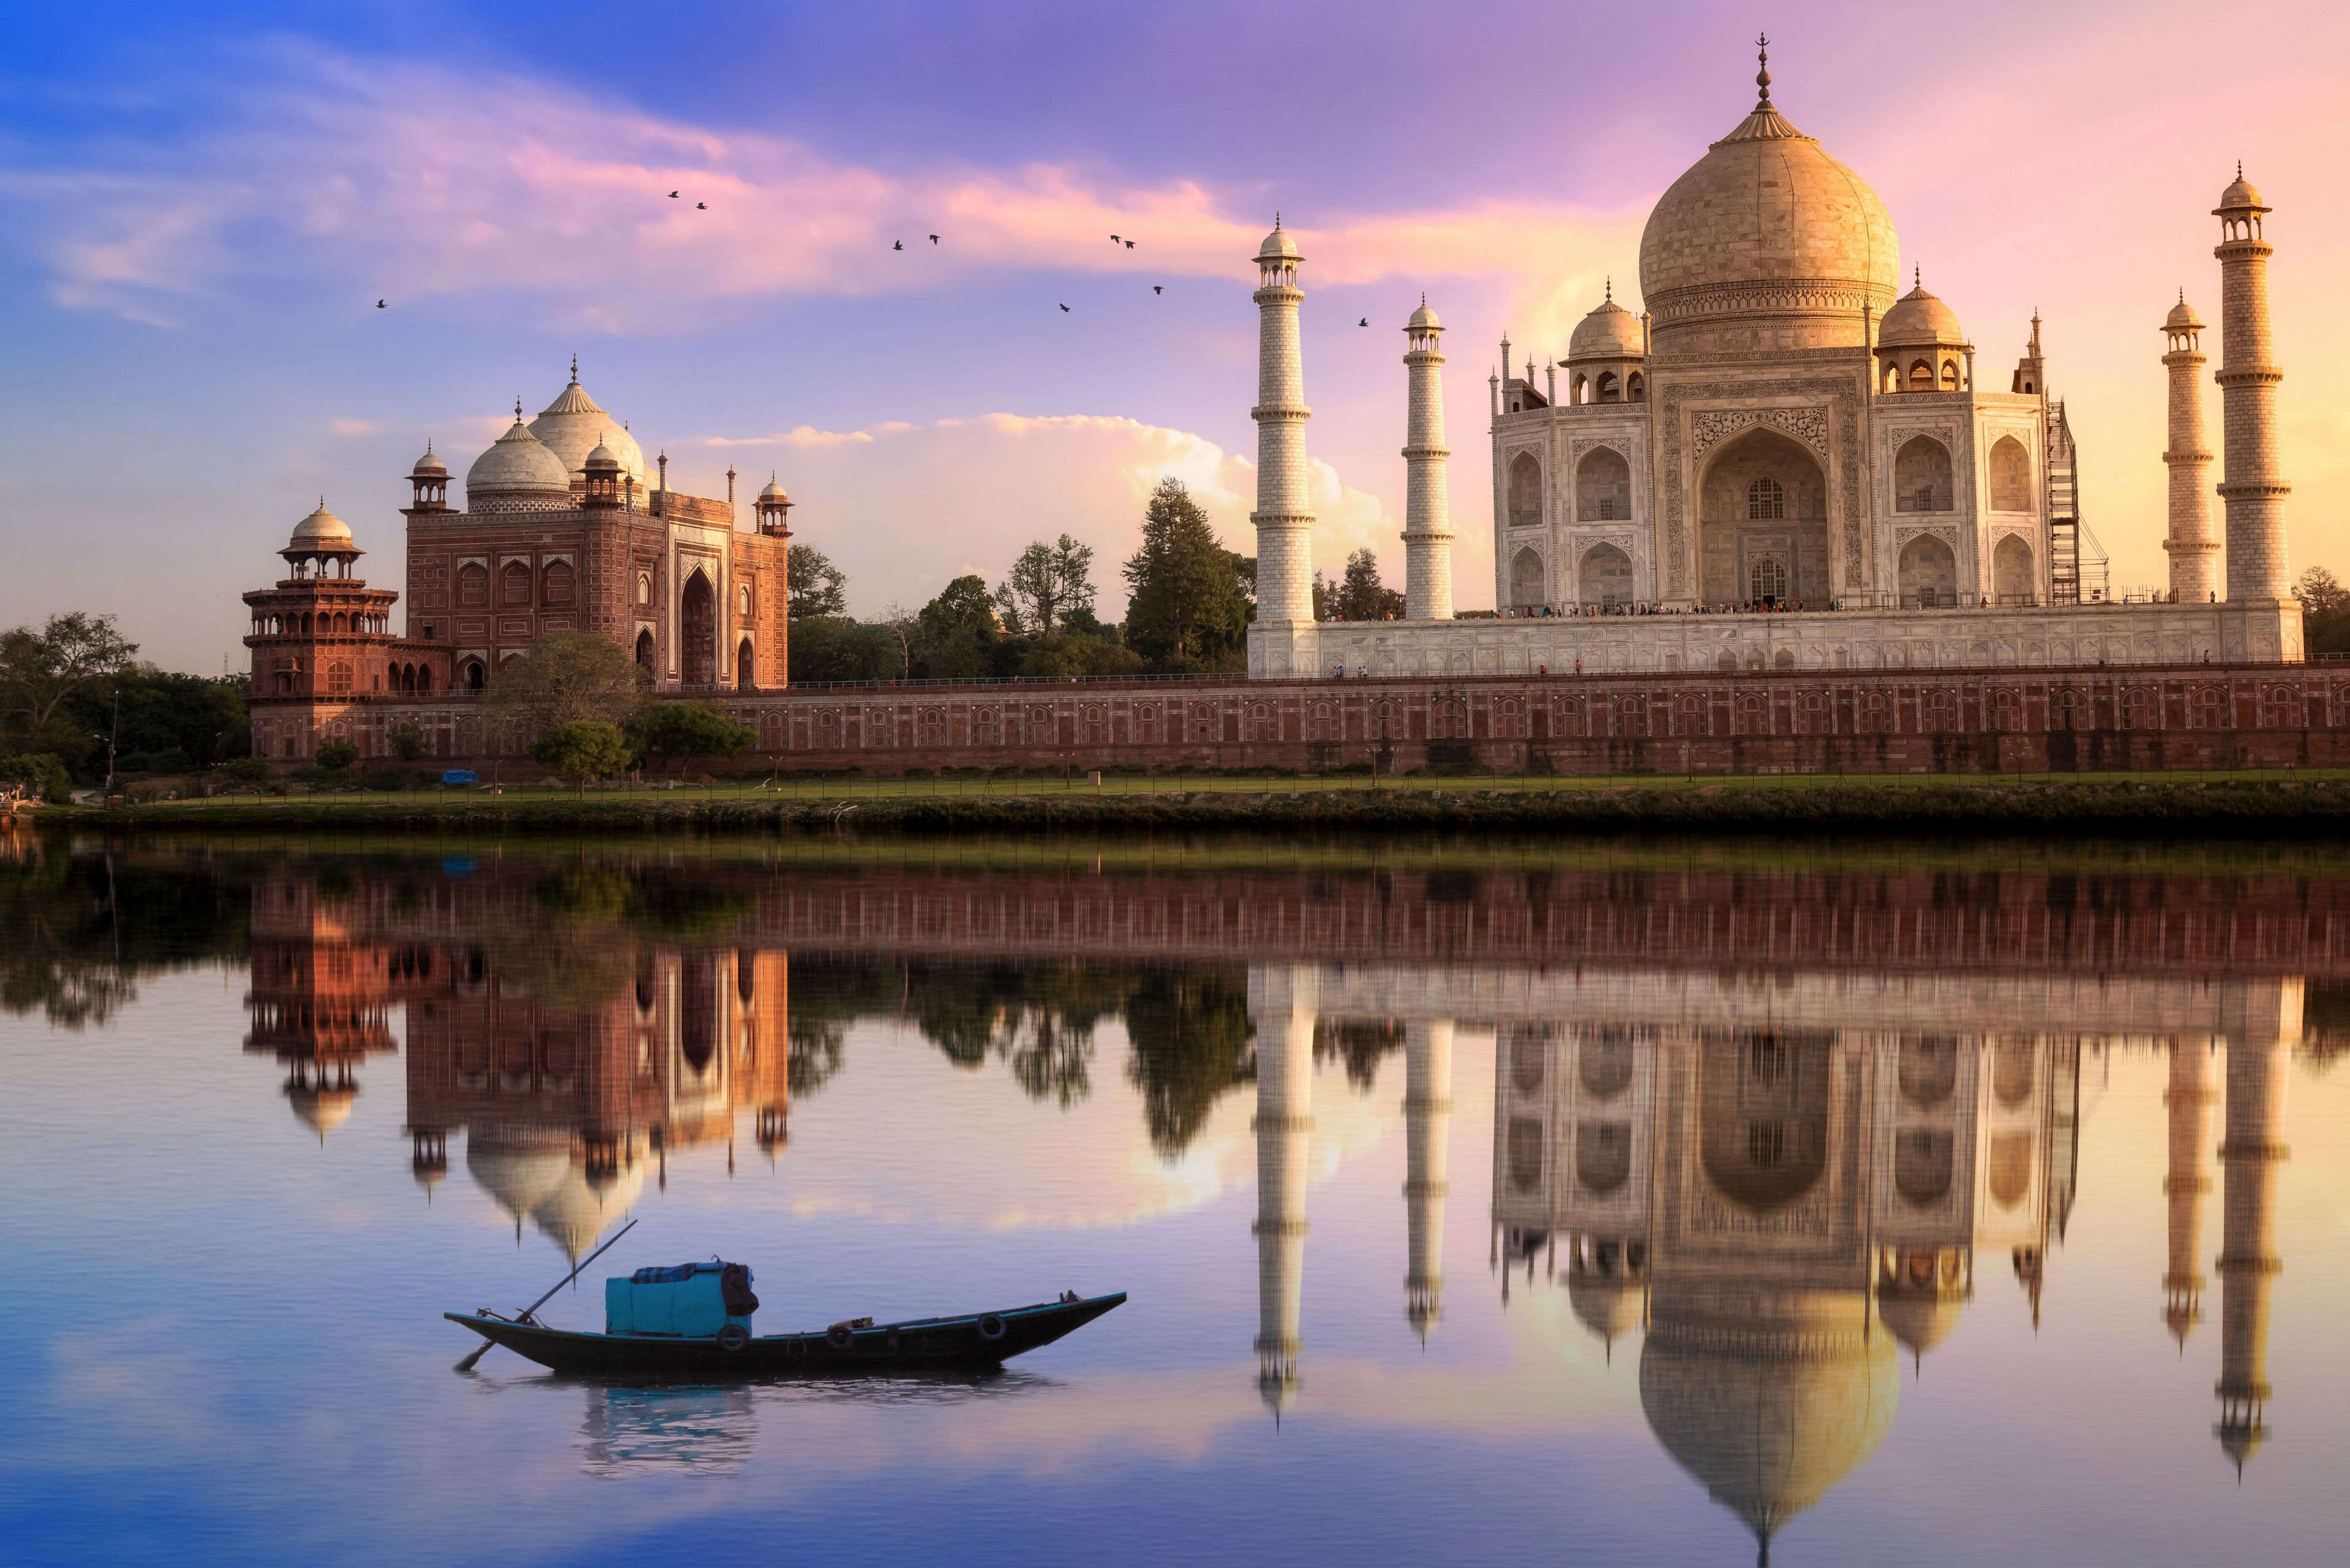 Hotels in Agra near Taj Mahal